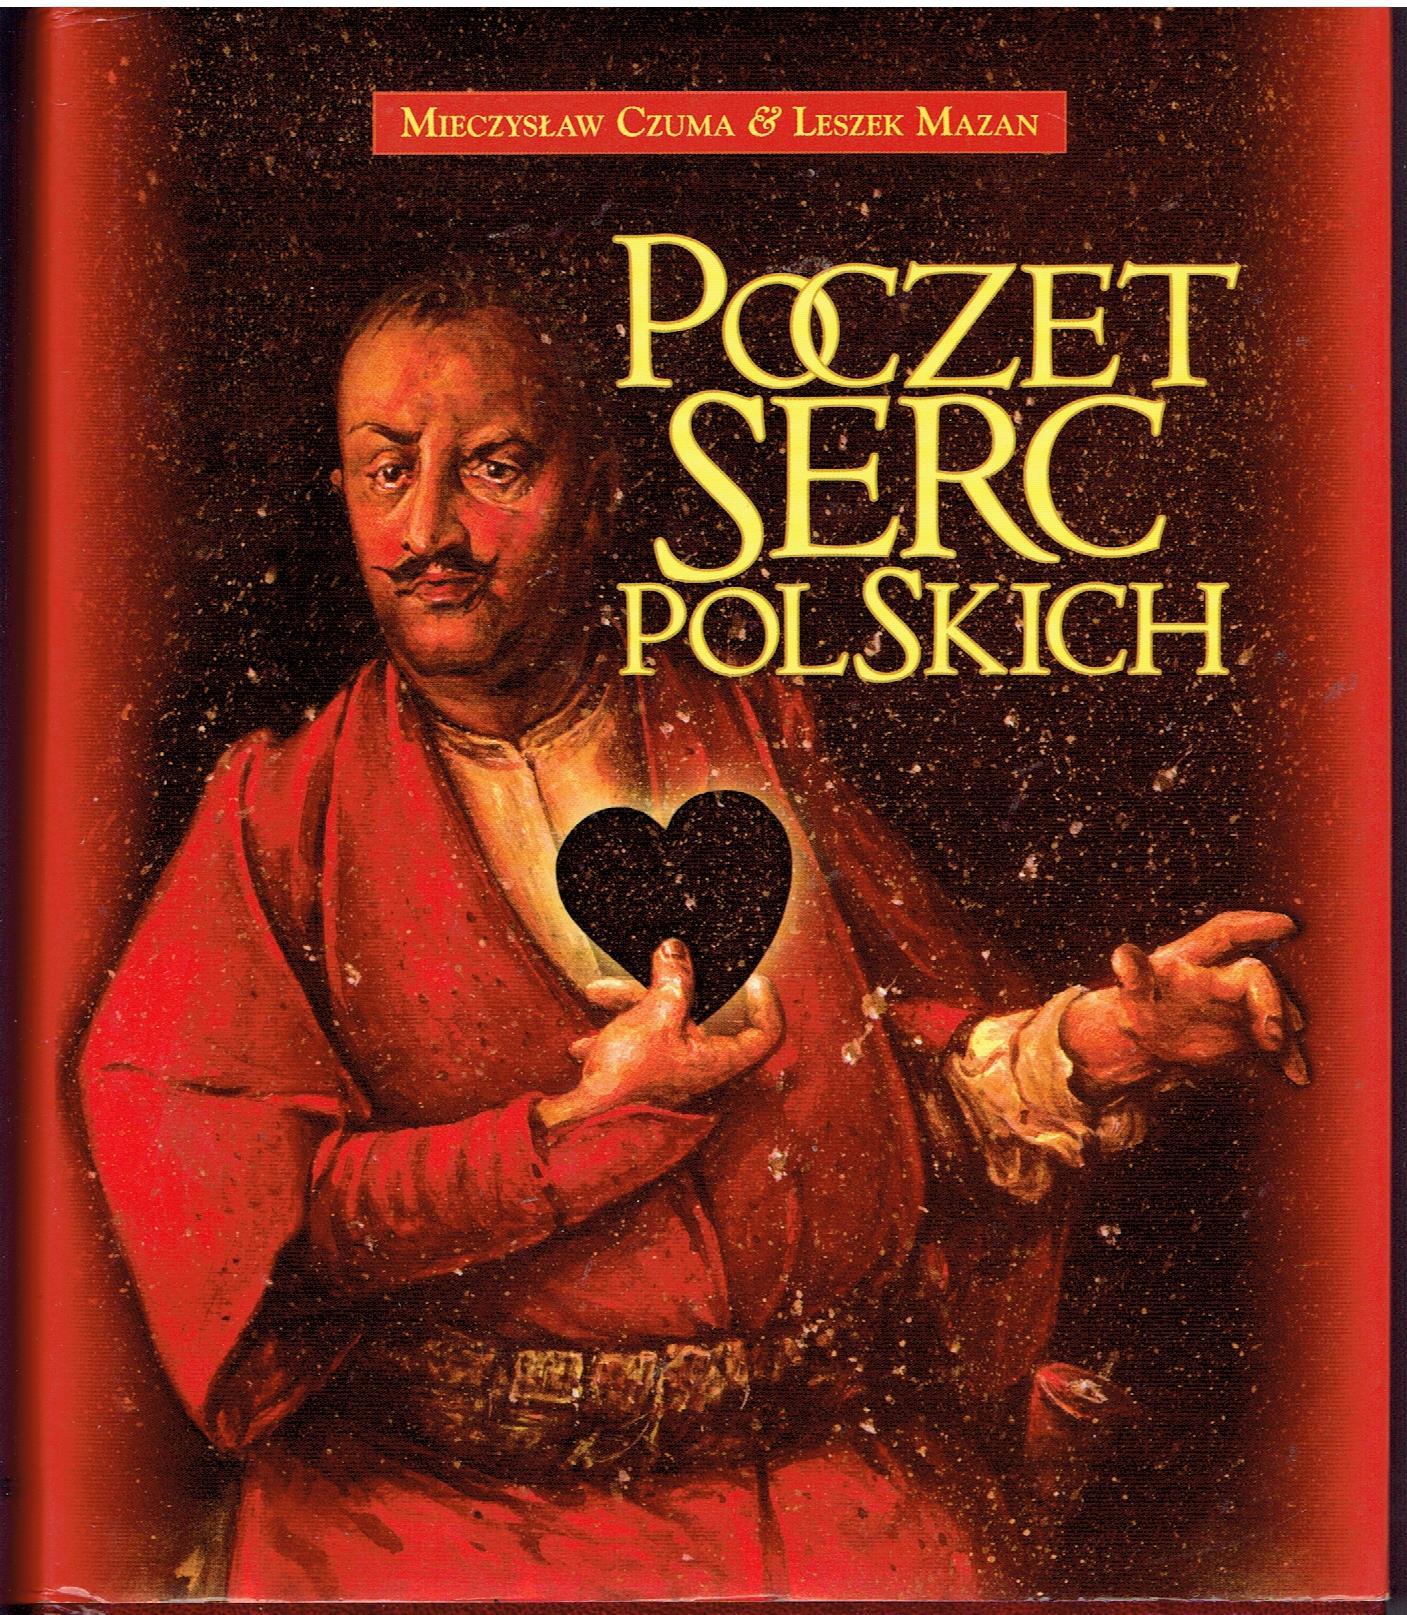  Poczet serc polskich